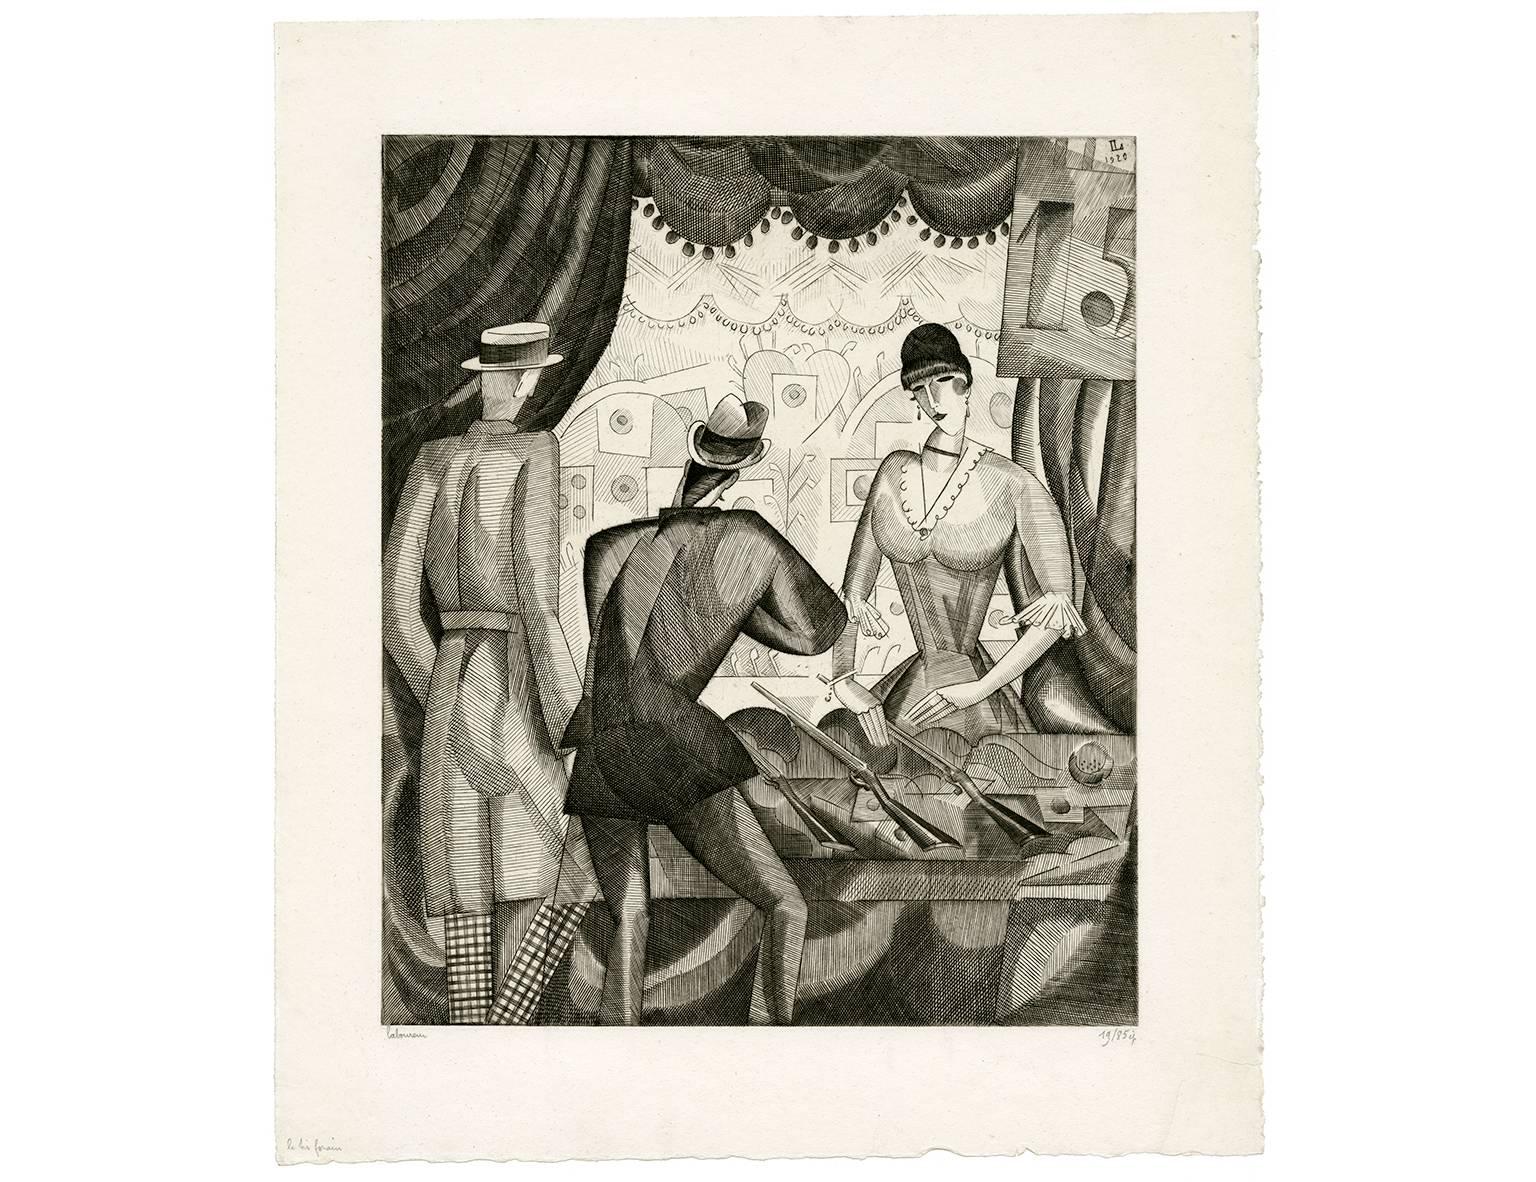 'Le Tir Forain' (Fairground Shooting) — 1920s French Cubism - Cubist Print by Jean-Emile Laboureur